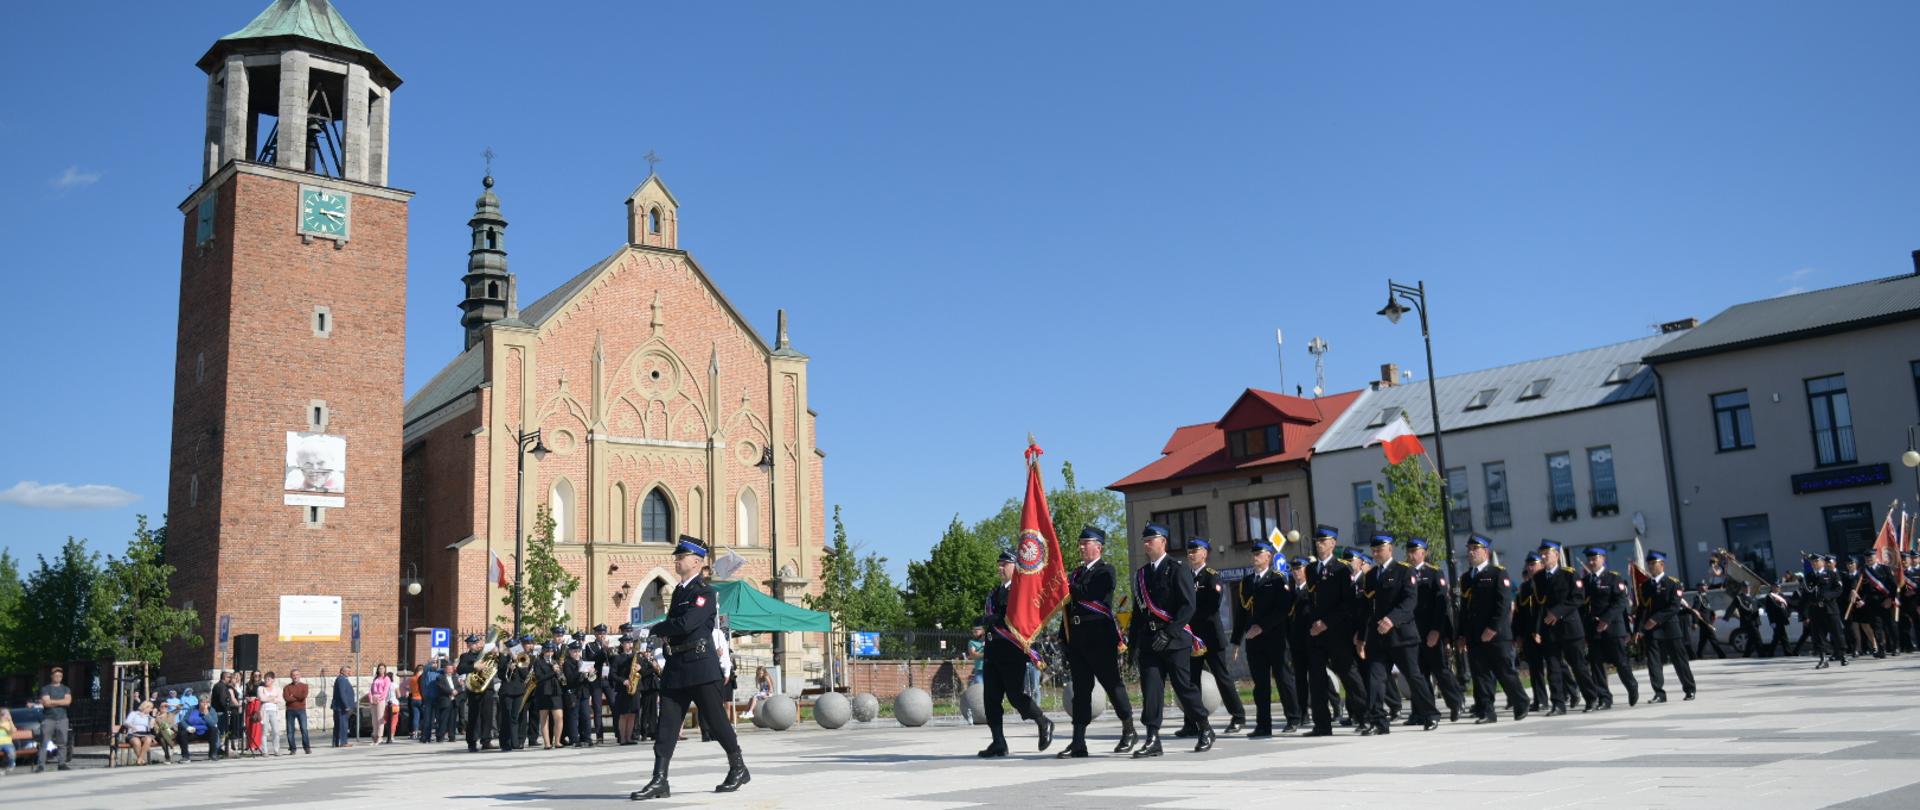 Strażacy maszerują po płycie rynku w Proszowicach, w tle kościół